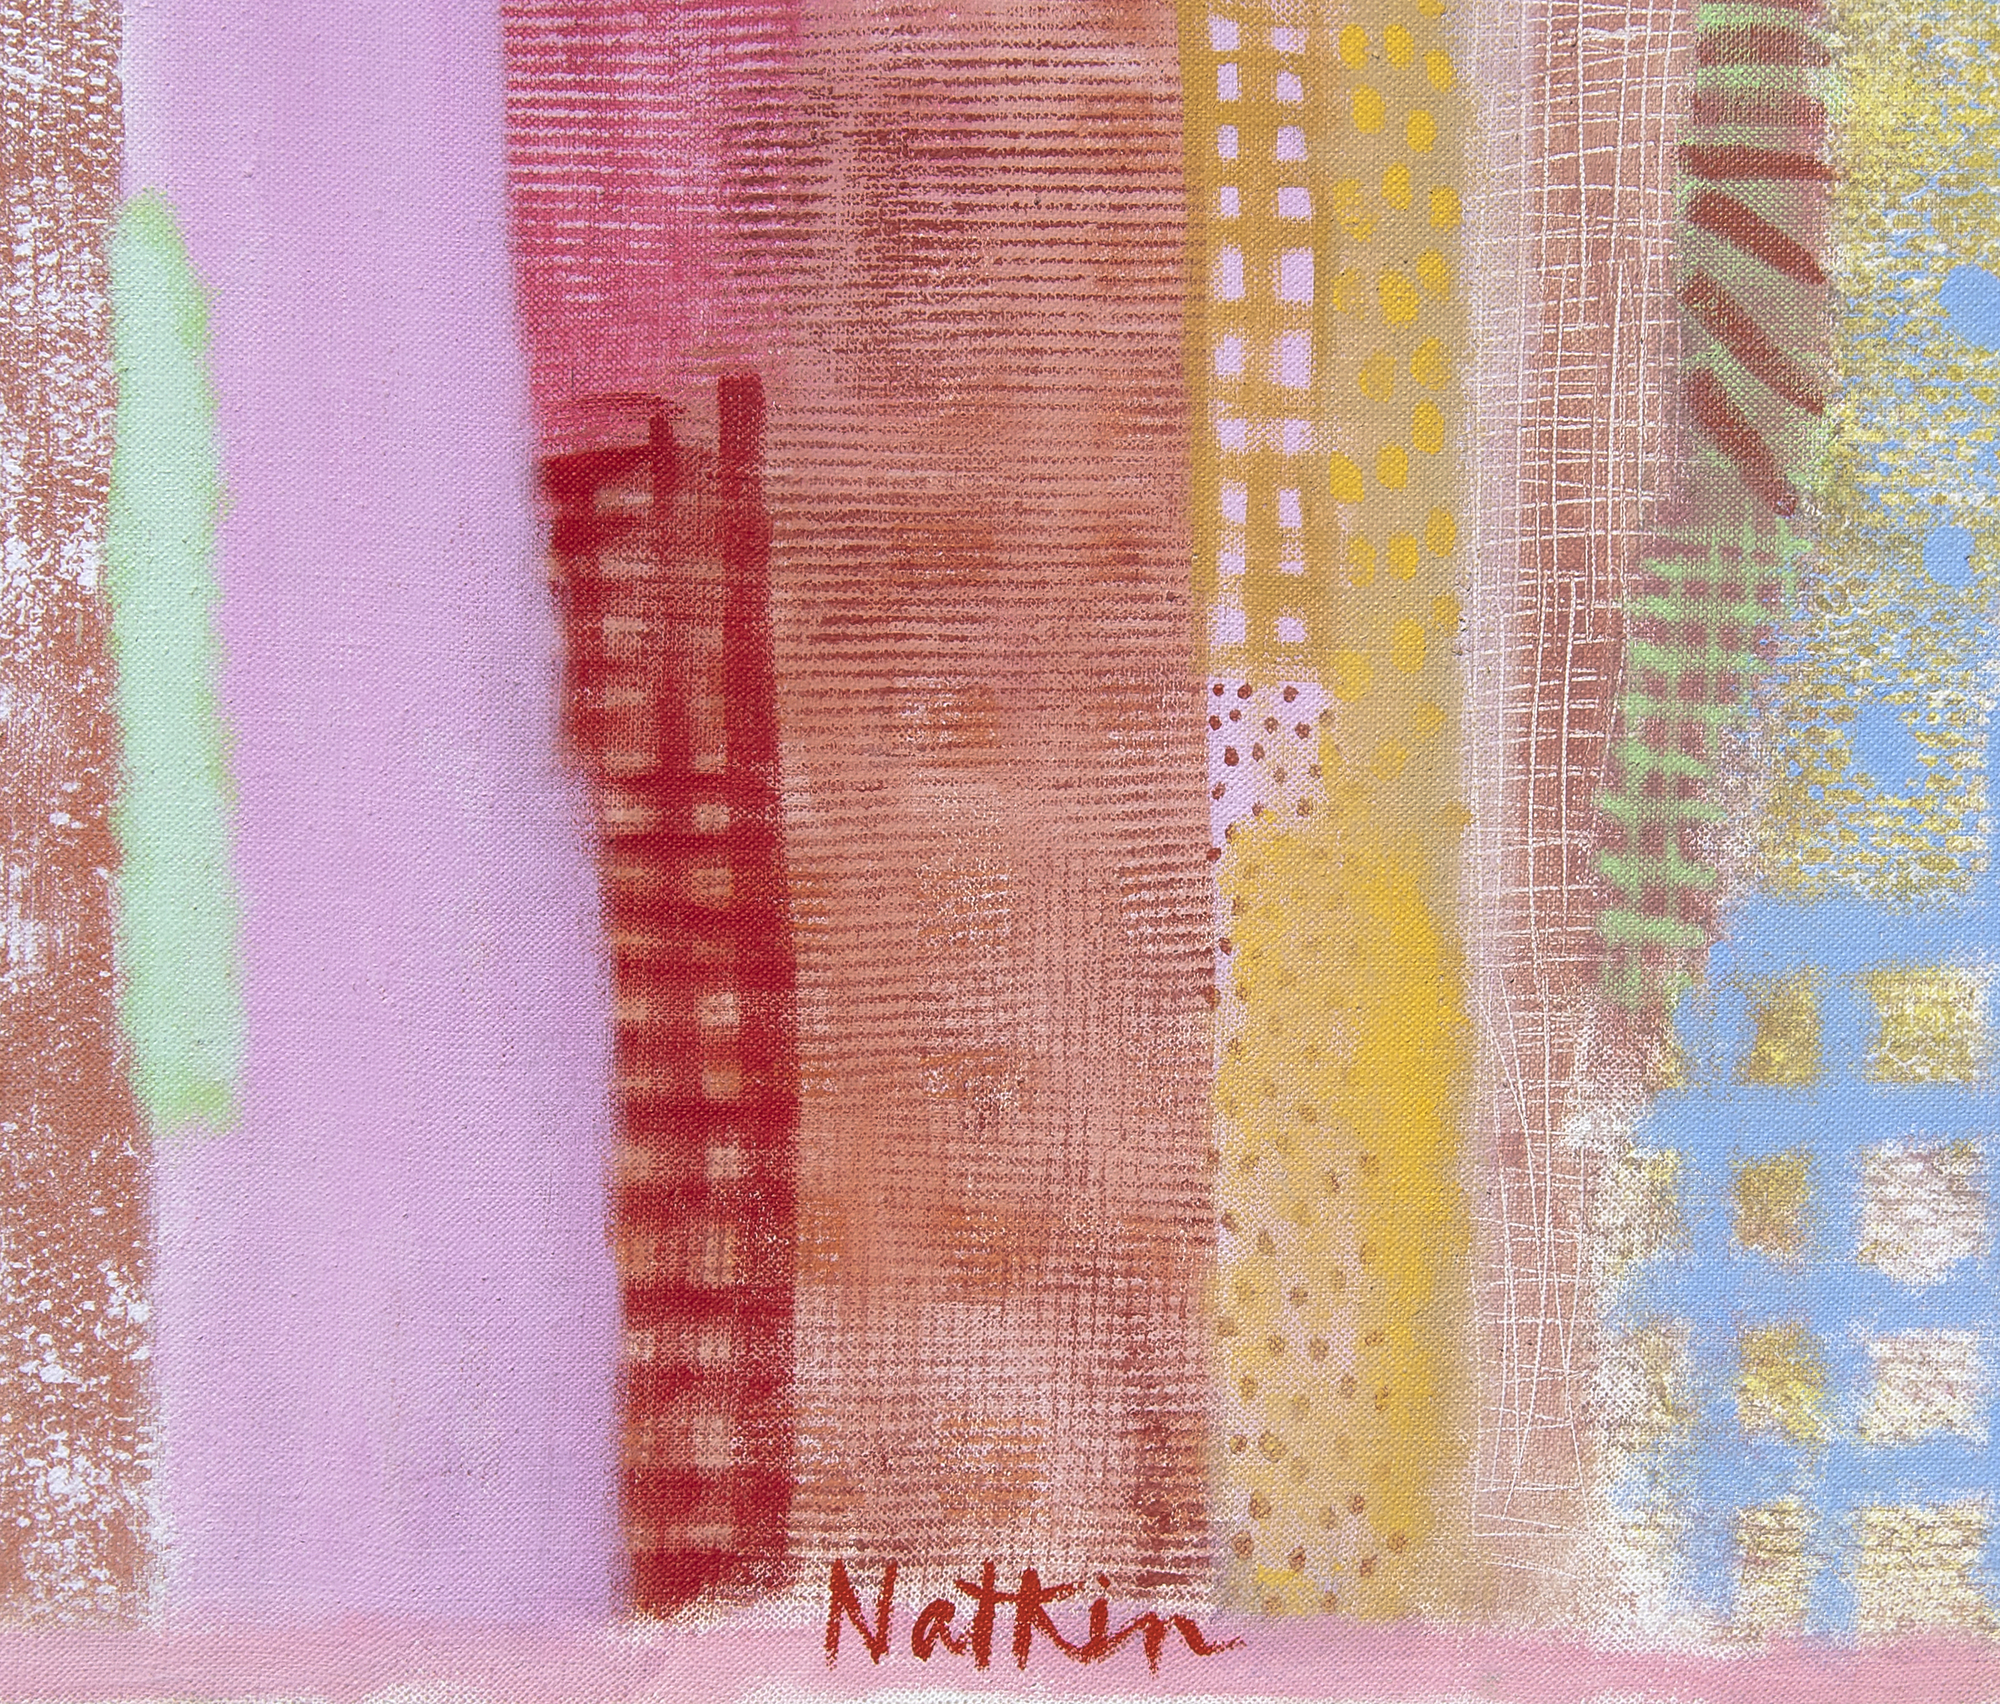 روبرت NATKIN-أبولو XL-الأكريليك علي قماش-88 x 116 1/4 في.